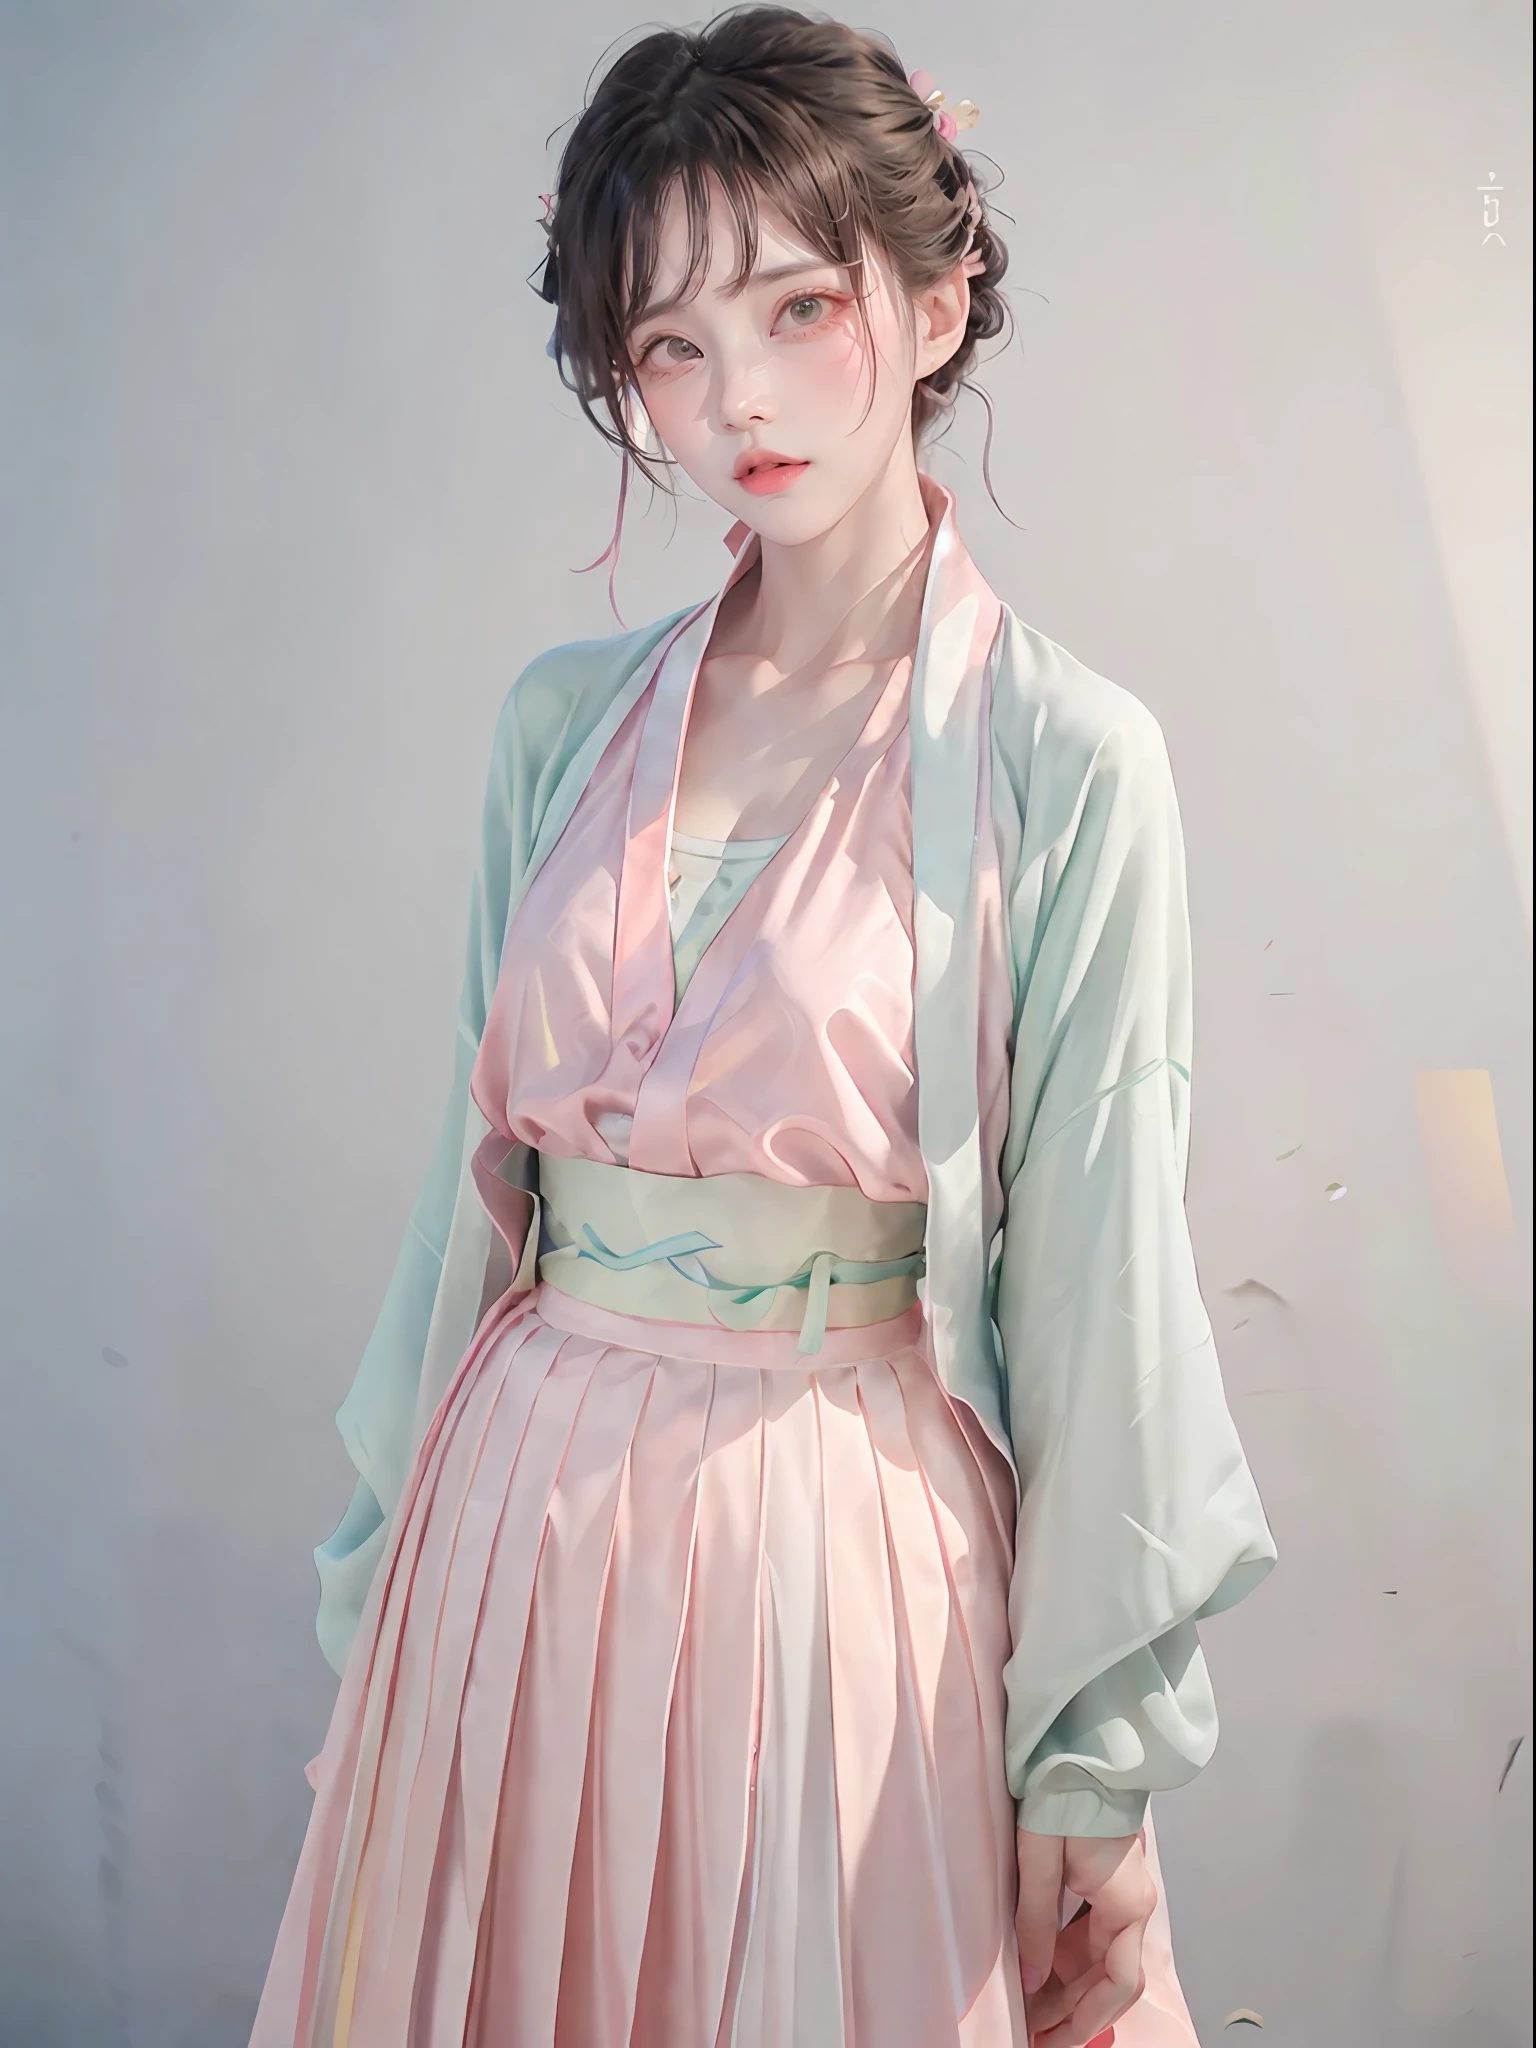 1 chica,(hanfu, shan corto rosa,  falda plisada verde degradado, canción rosa),(parte superior del cuerpo:1.5),Enfoque facial, resolución ultra alta, (Fotorrealista:1.4), foto en bruto,16k,iluminación dramática,